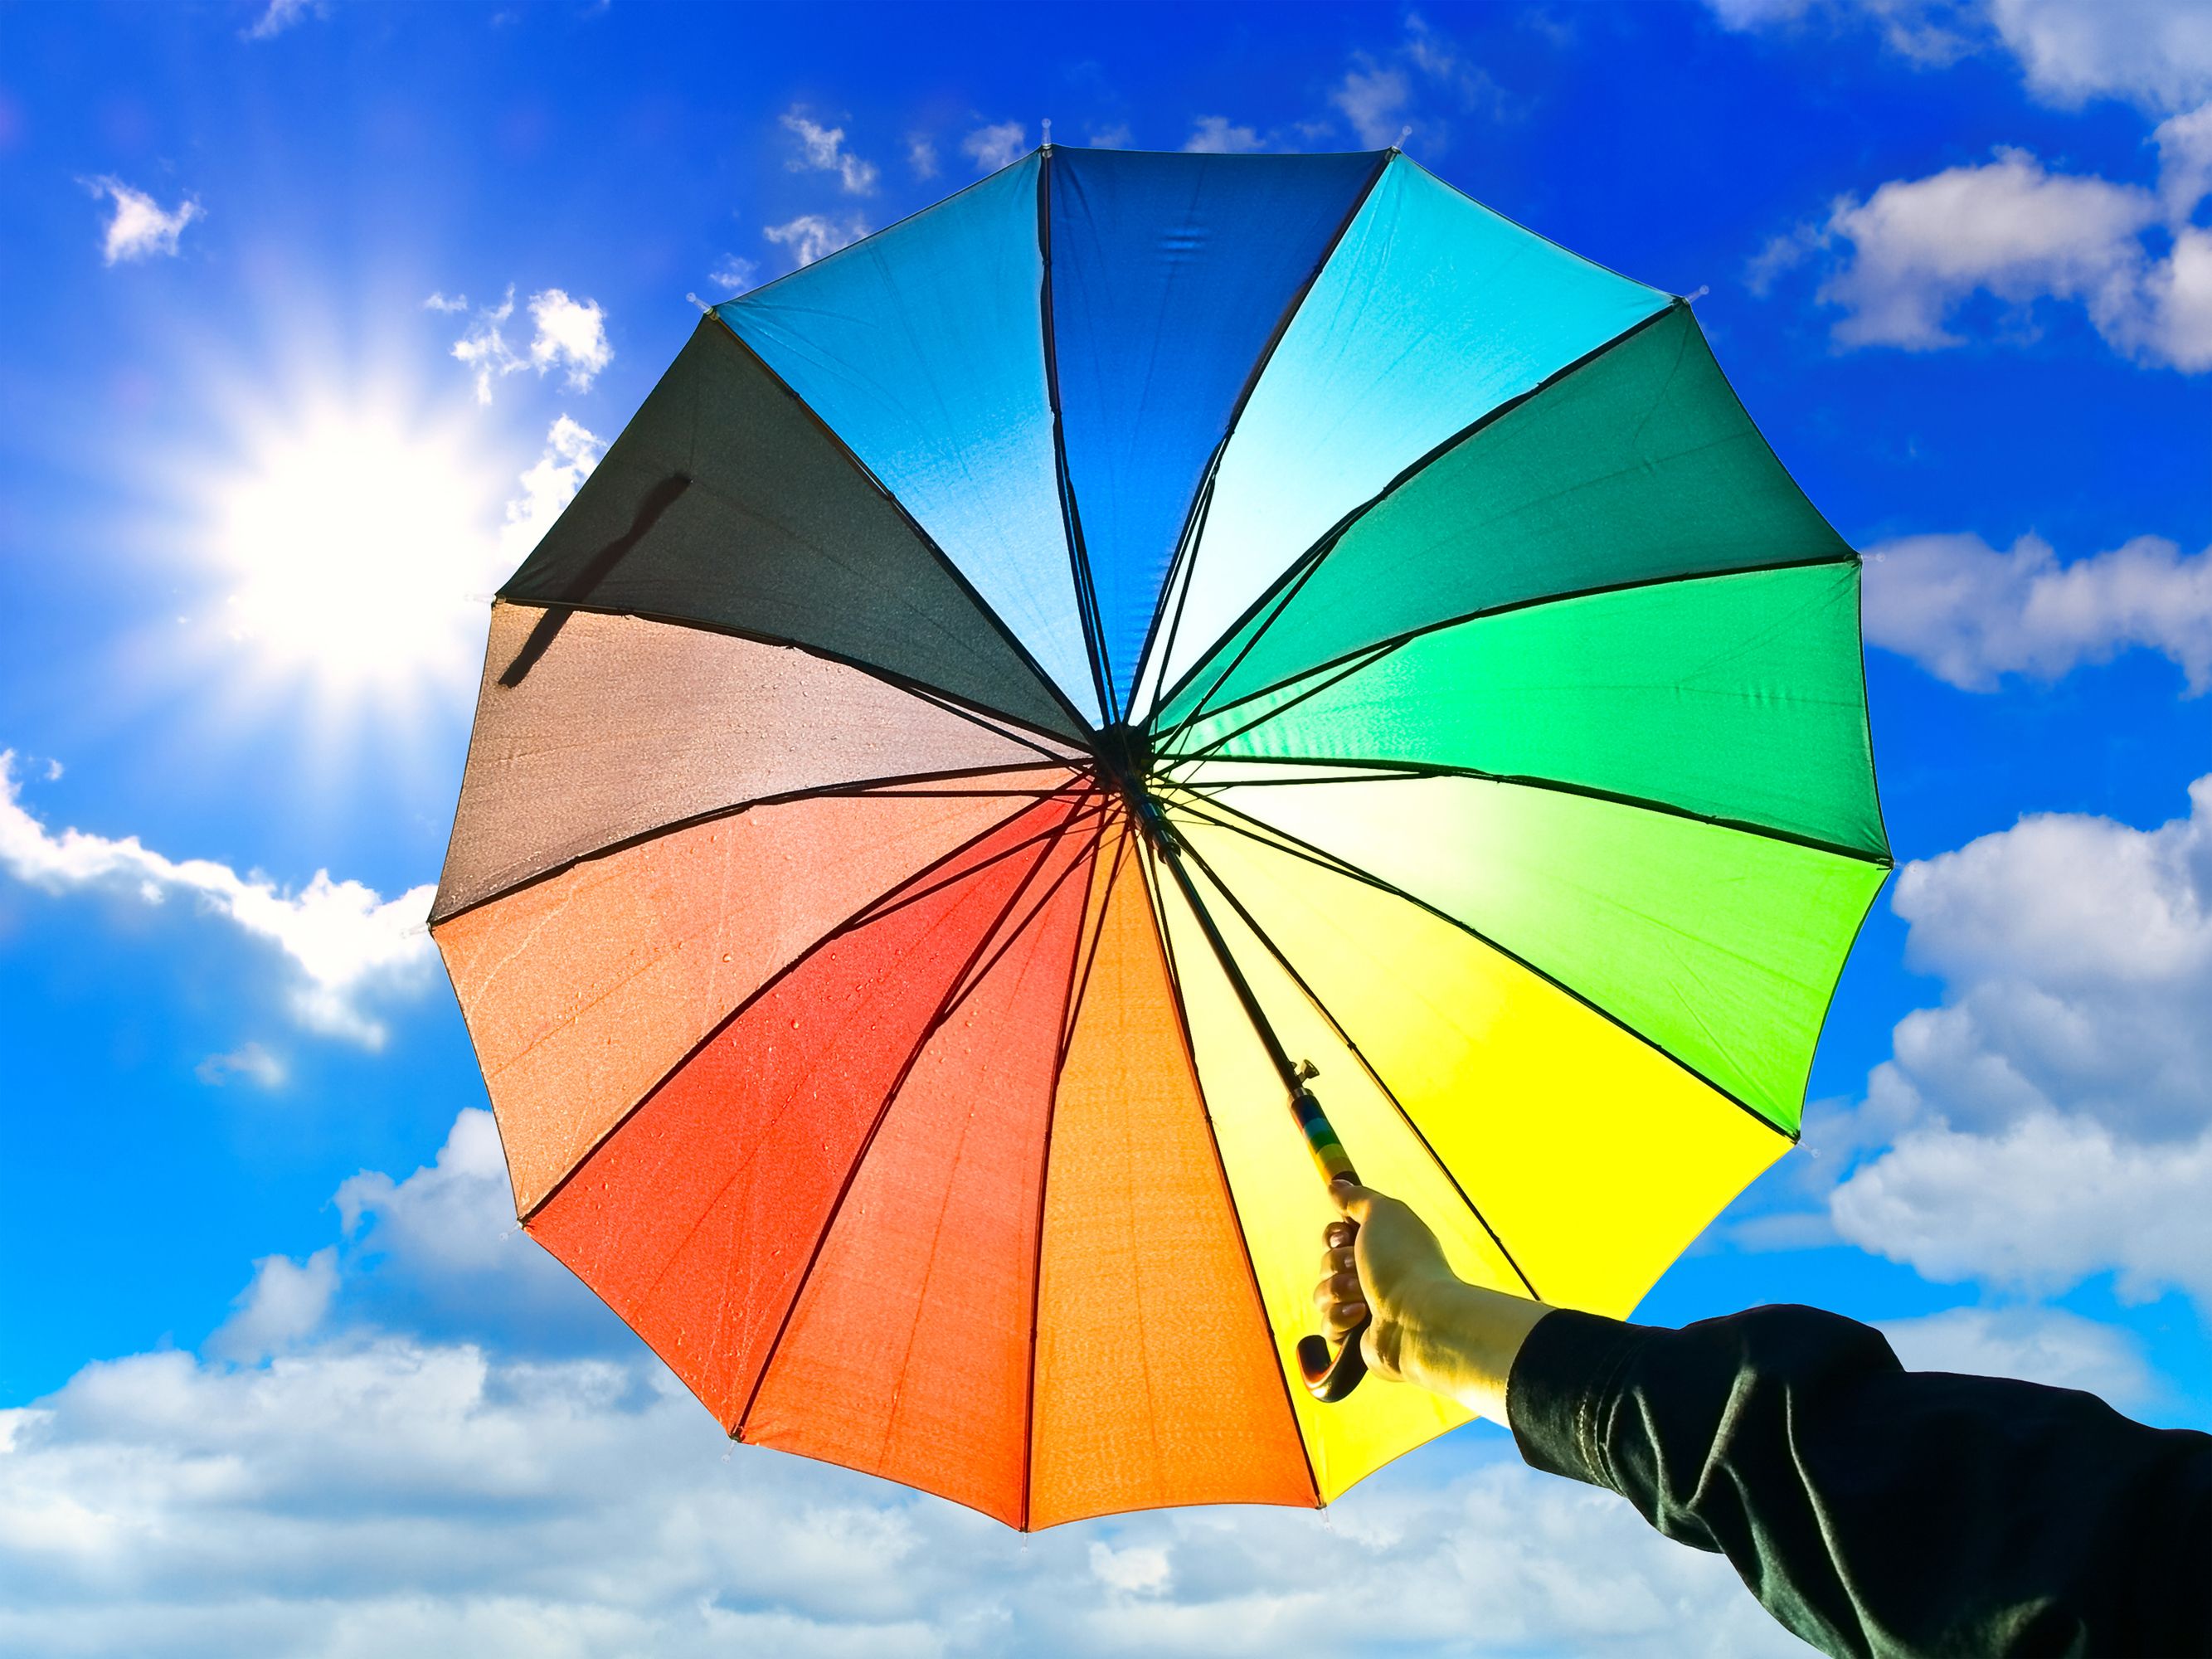 创意小清新长柄透明伞 彩色直杆自动雨伞批发印logo广告礼品伞-阿里巴巴